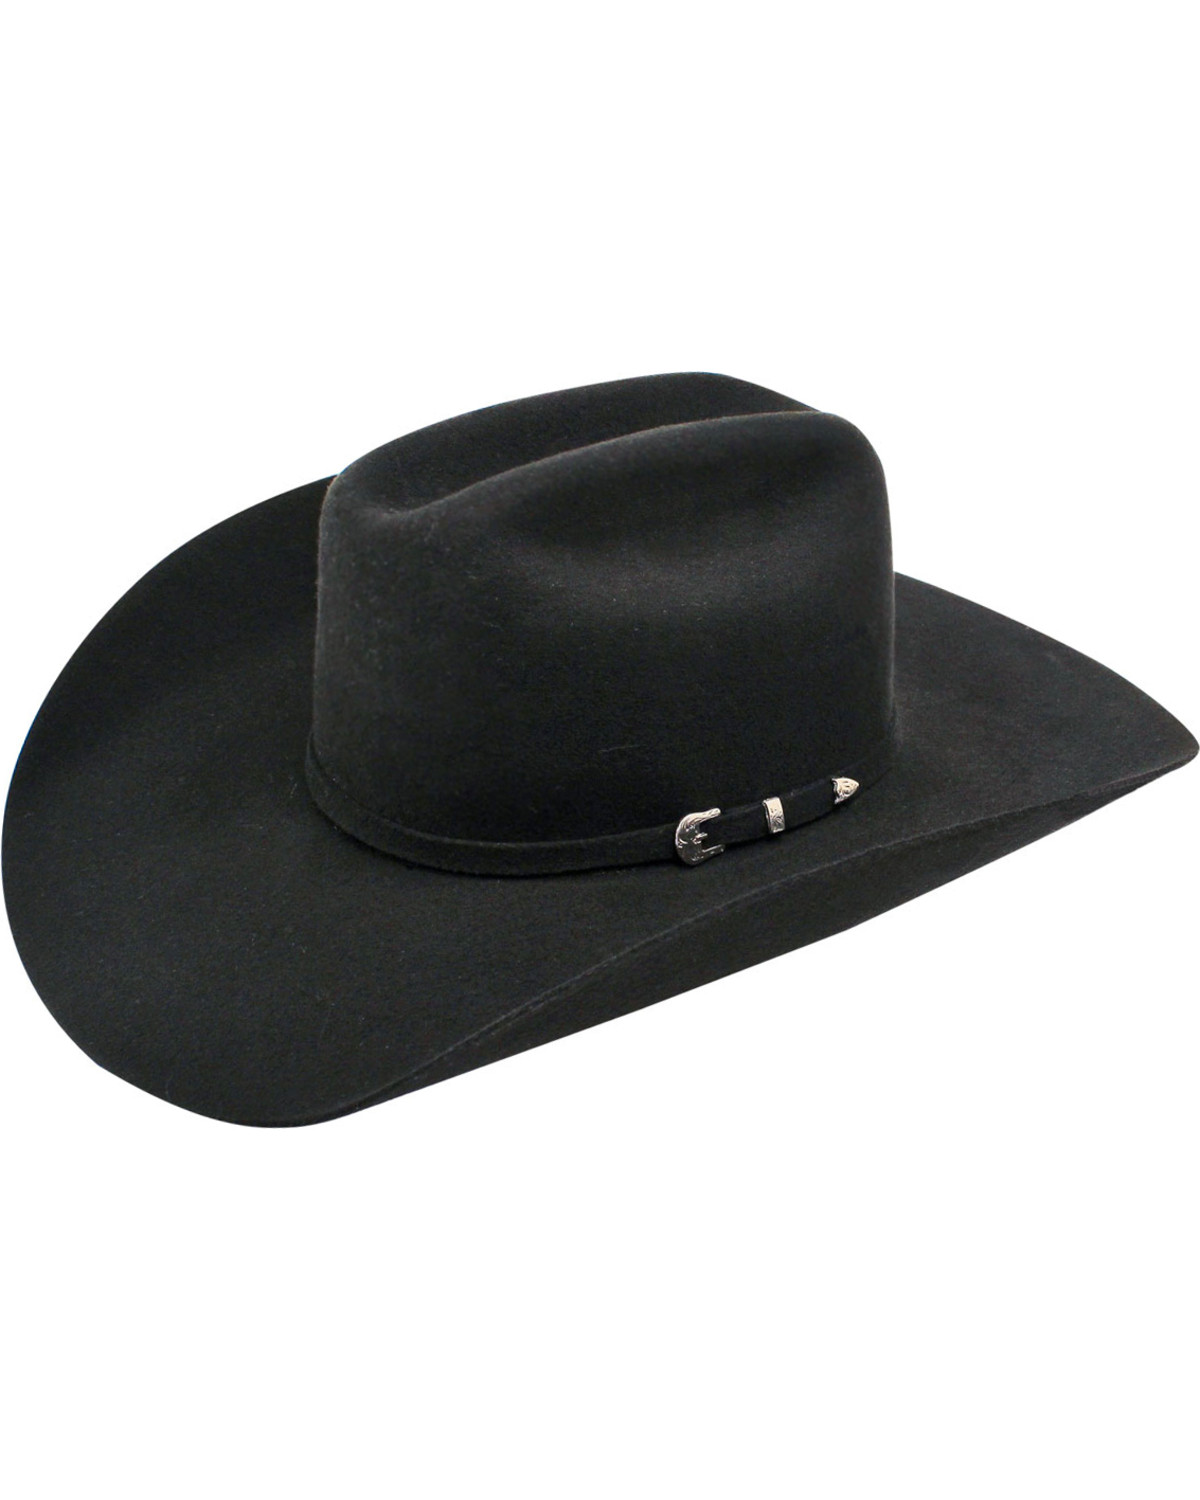 Ariat 3X Felt Cowboy Hat